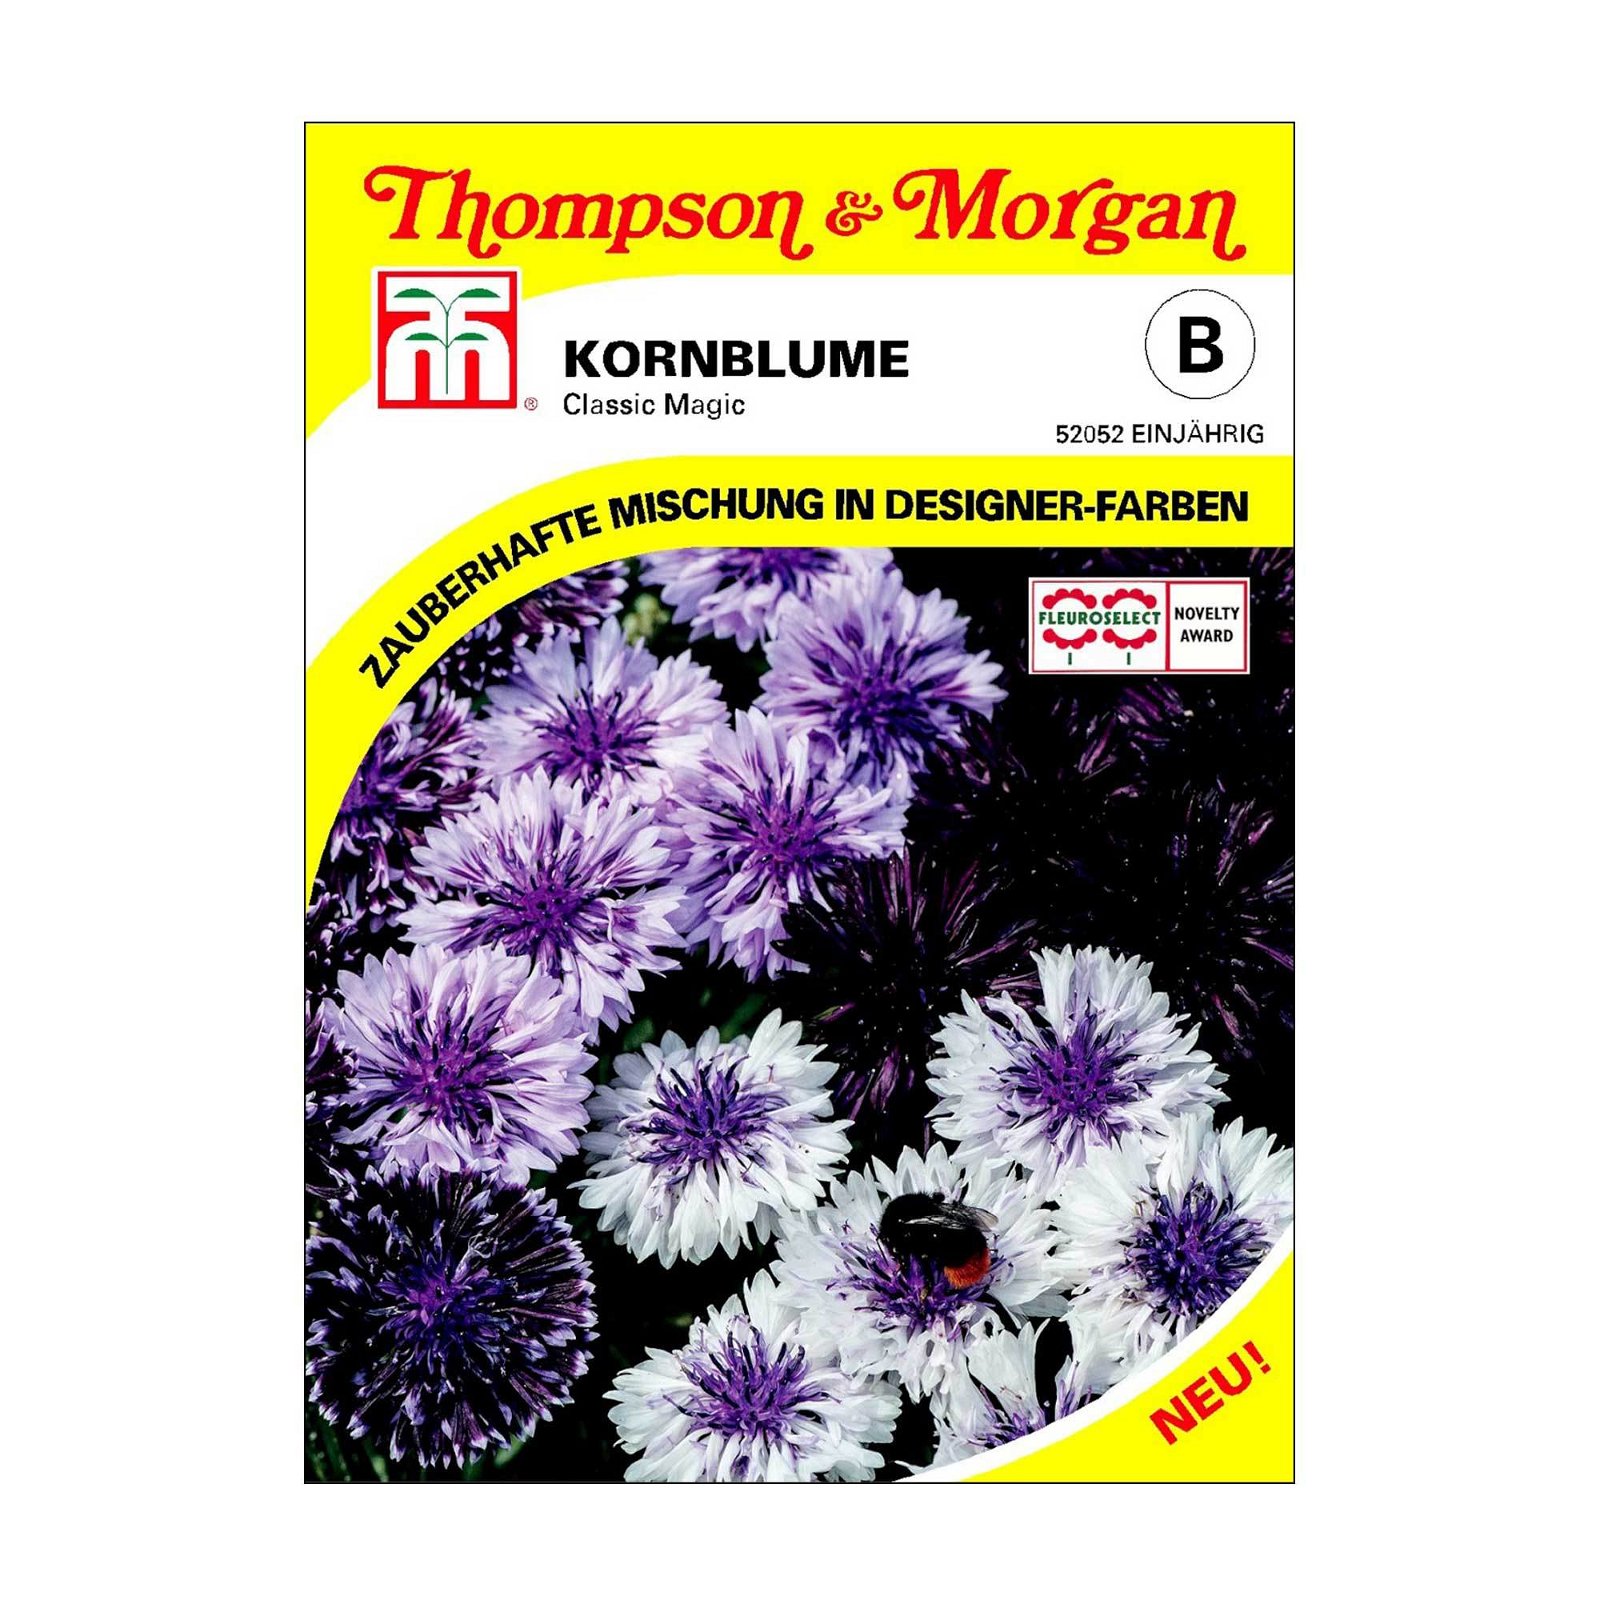 Kornblume Classic Magic, Designer-Farben, einjährig blühend, ideal in Rabatten und als Schnittblume